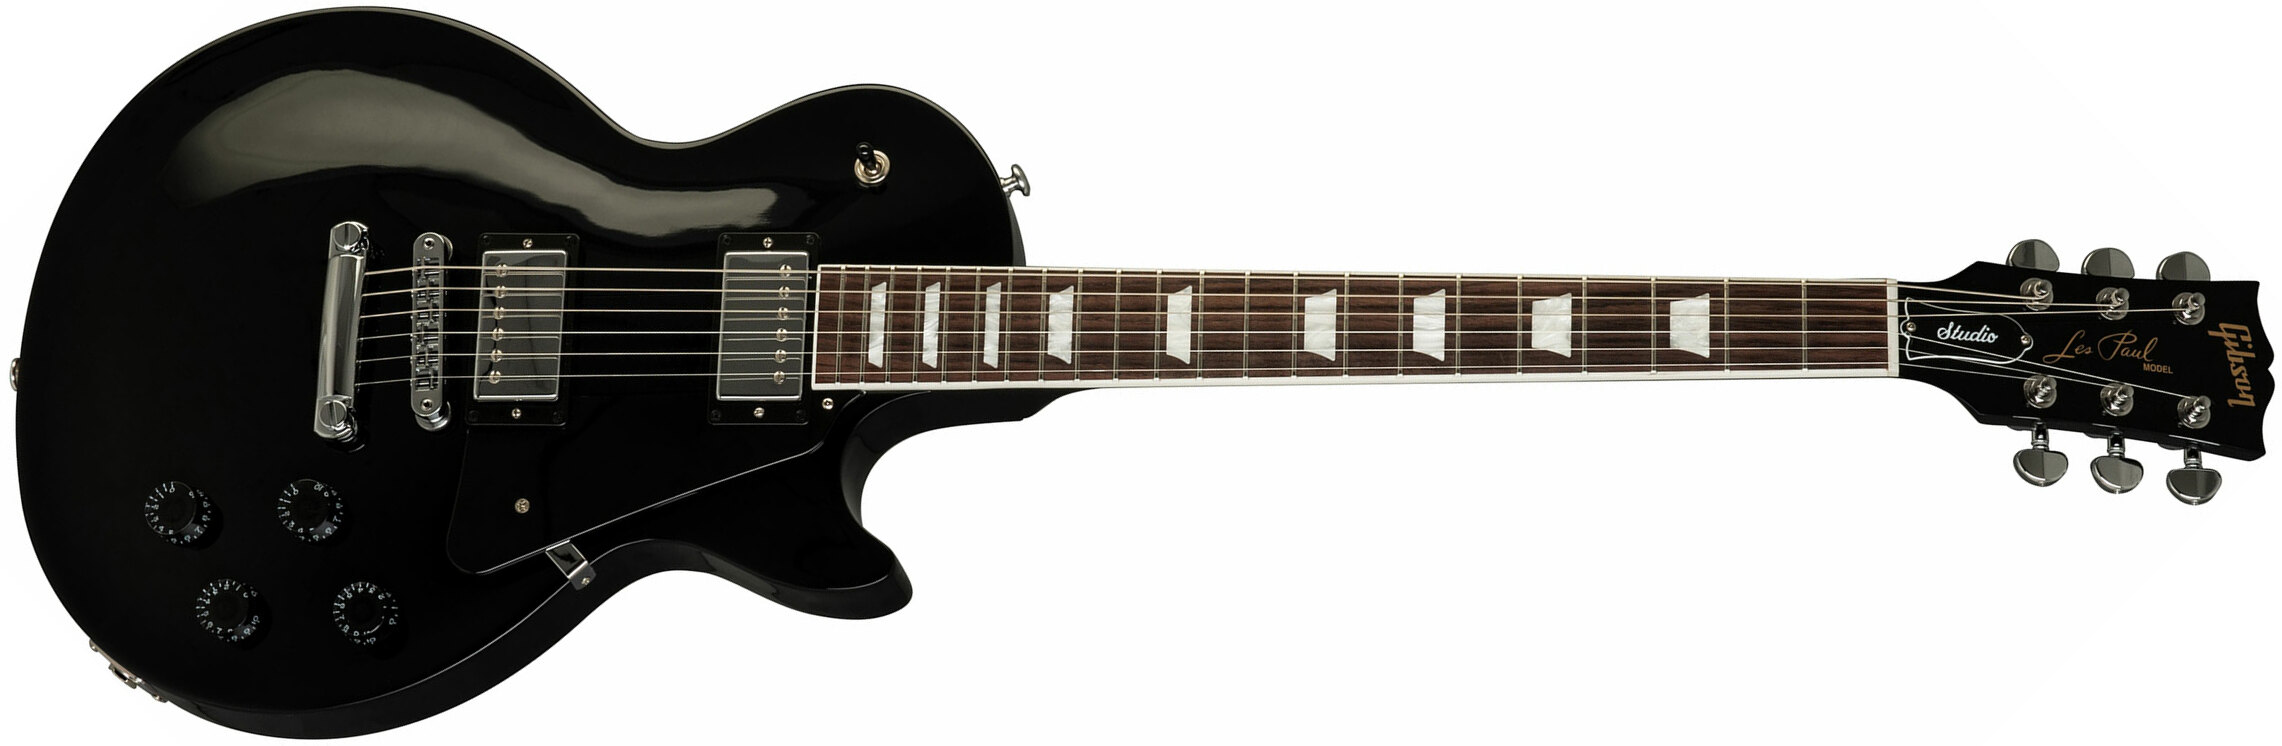 Gibson Les Paul Studio 2019 Hh Ht Rw - Ebony - Enkel gesneden elektrische gitaar - Main picture